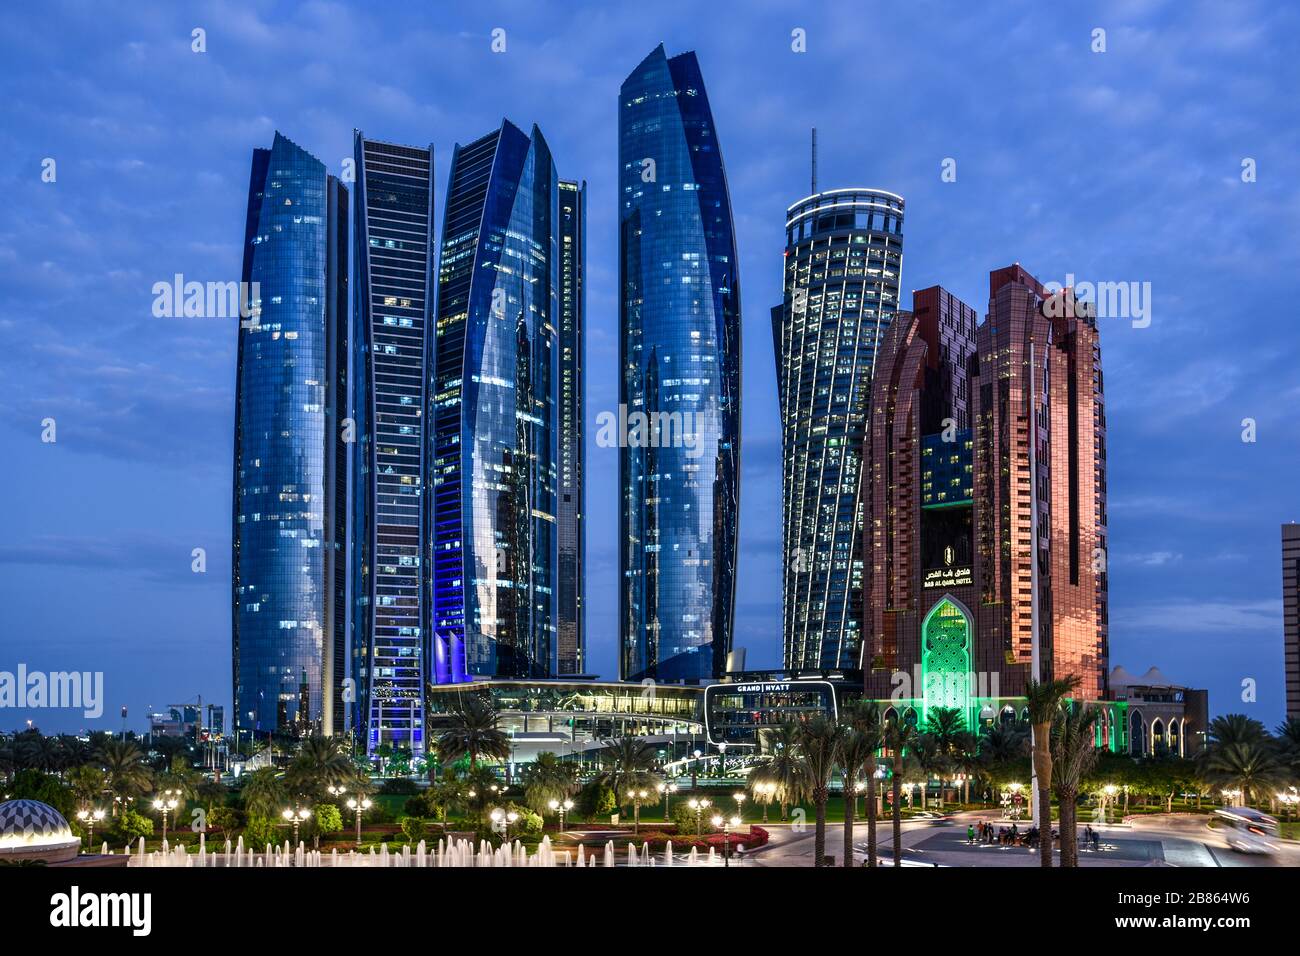 United Arab Emirates. Abu Dhabi. Etihad Towers Stock Photo